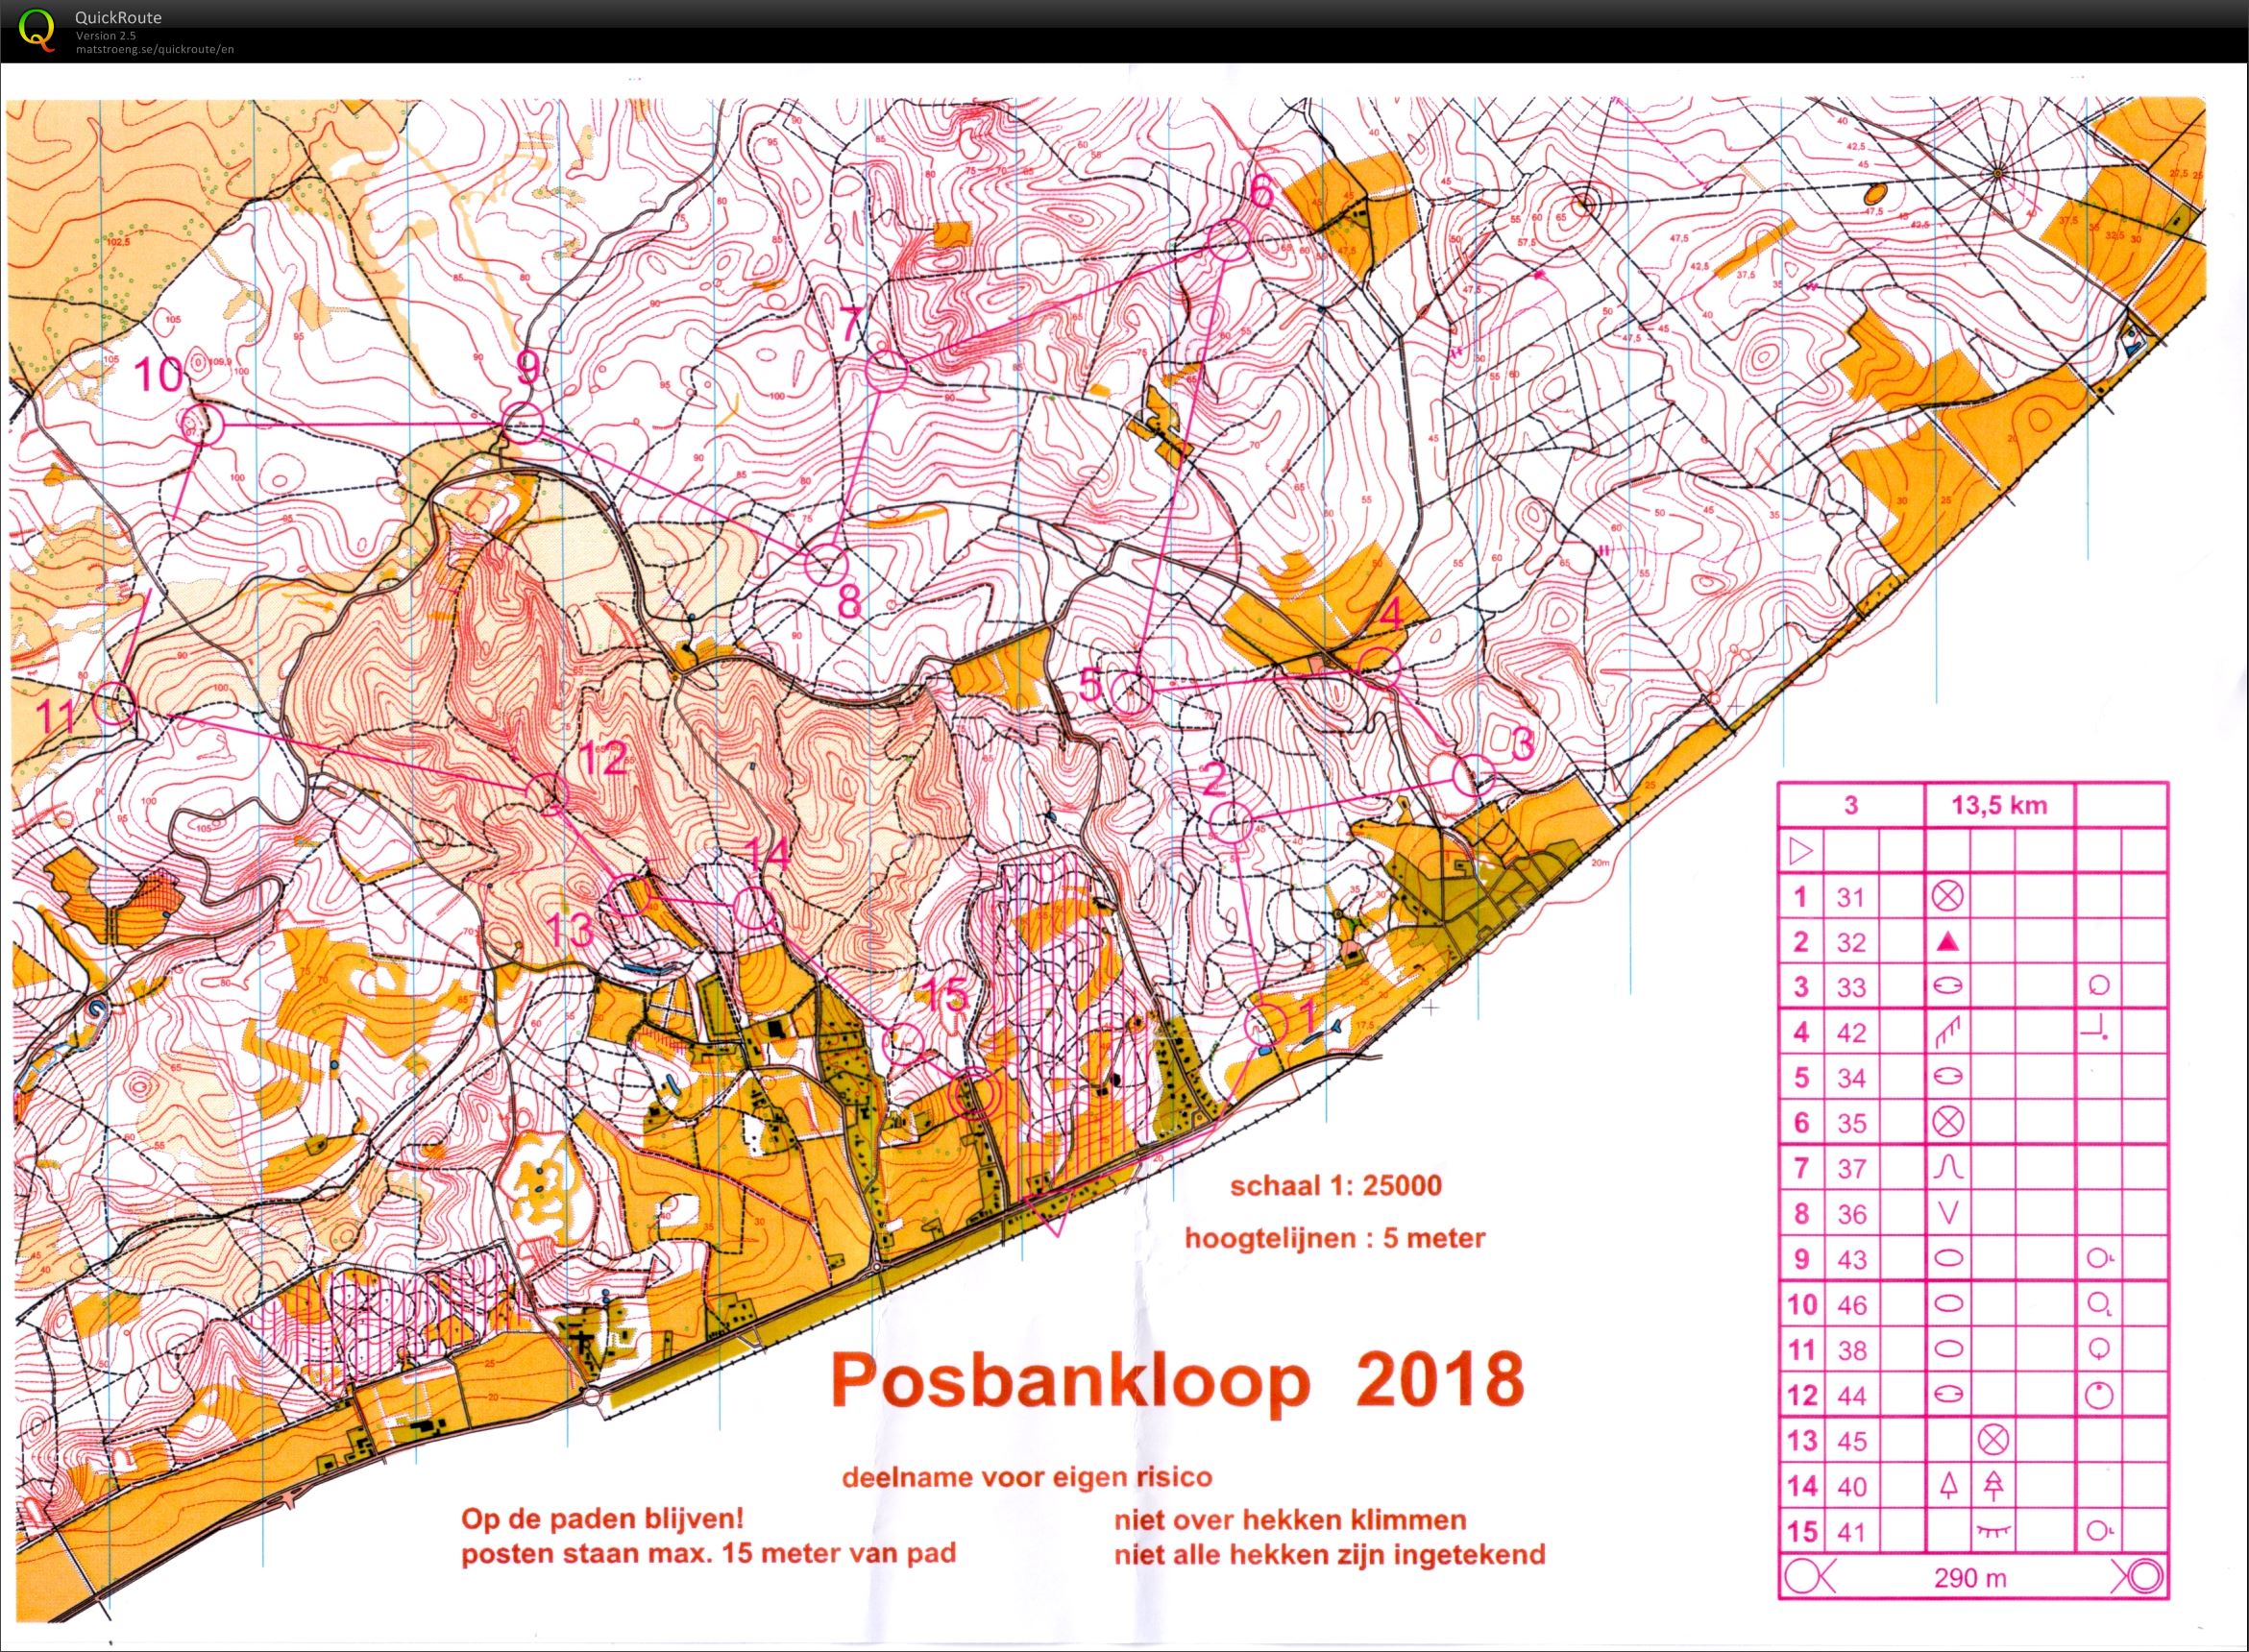 Posbankloop 2018 (17-03-2018)